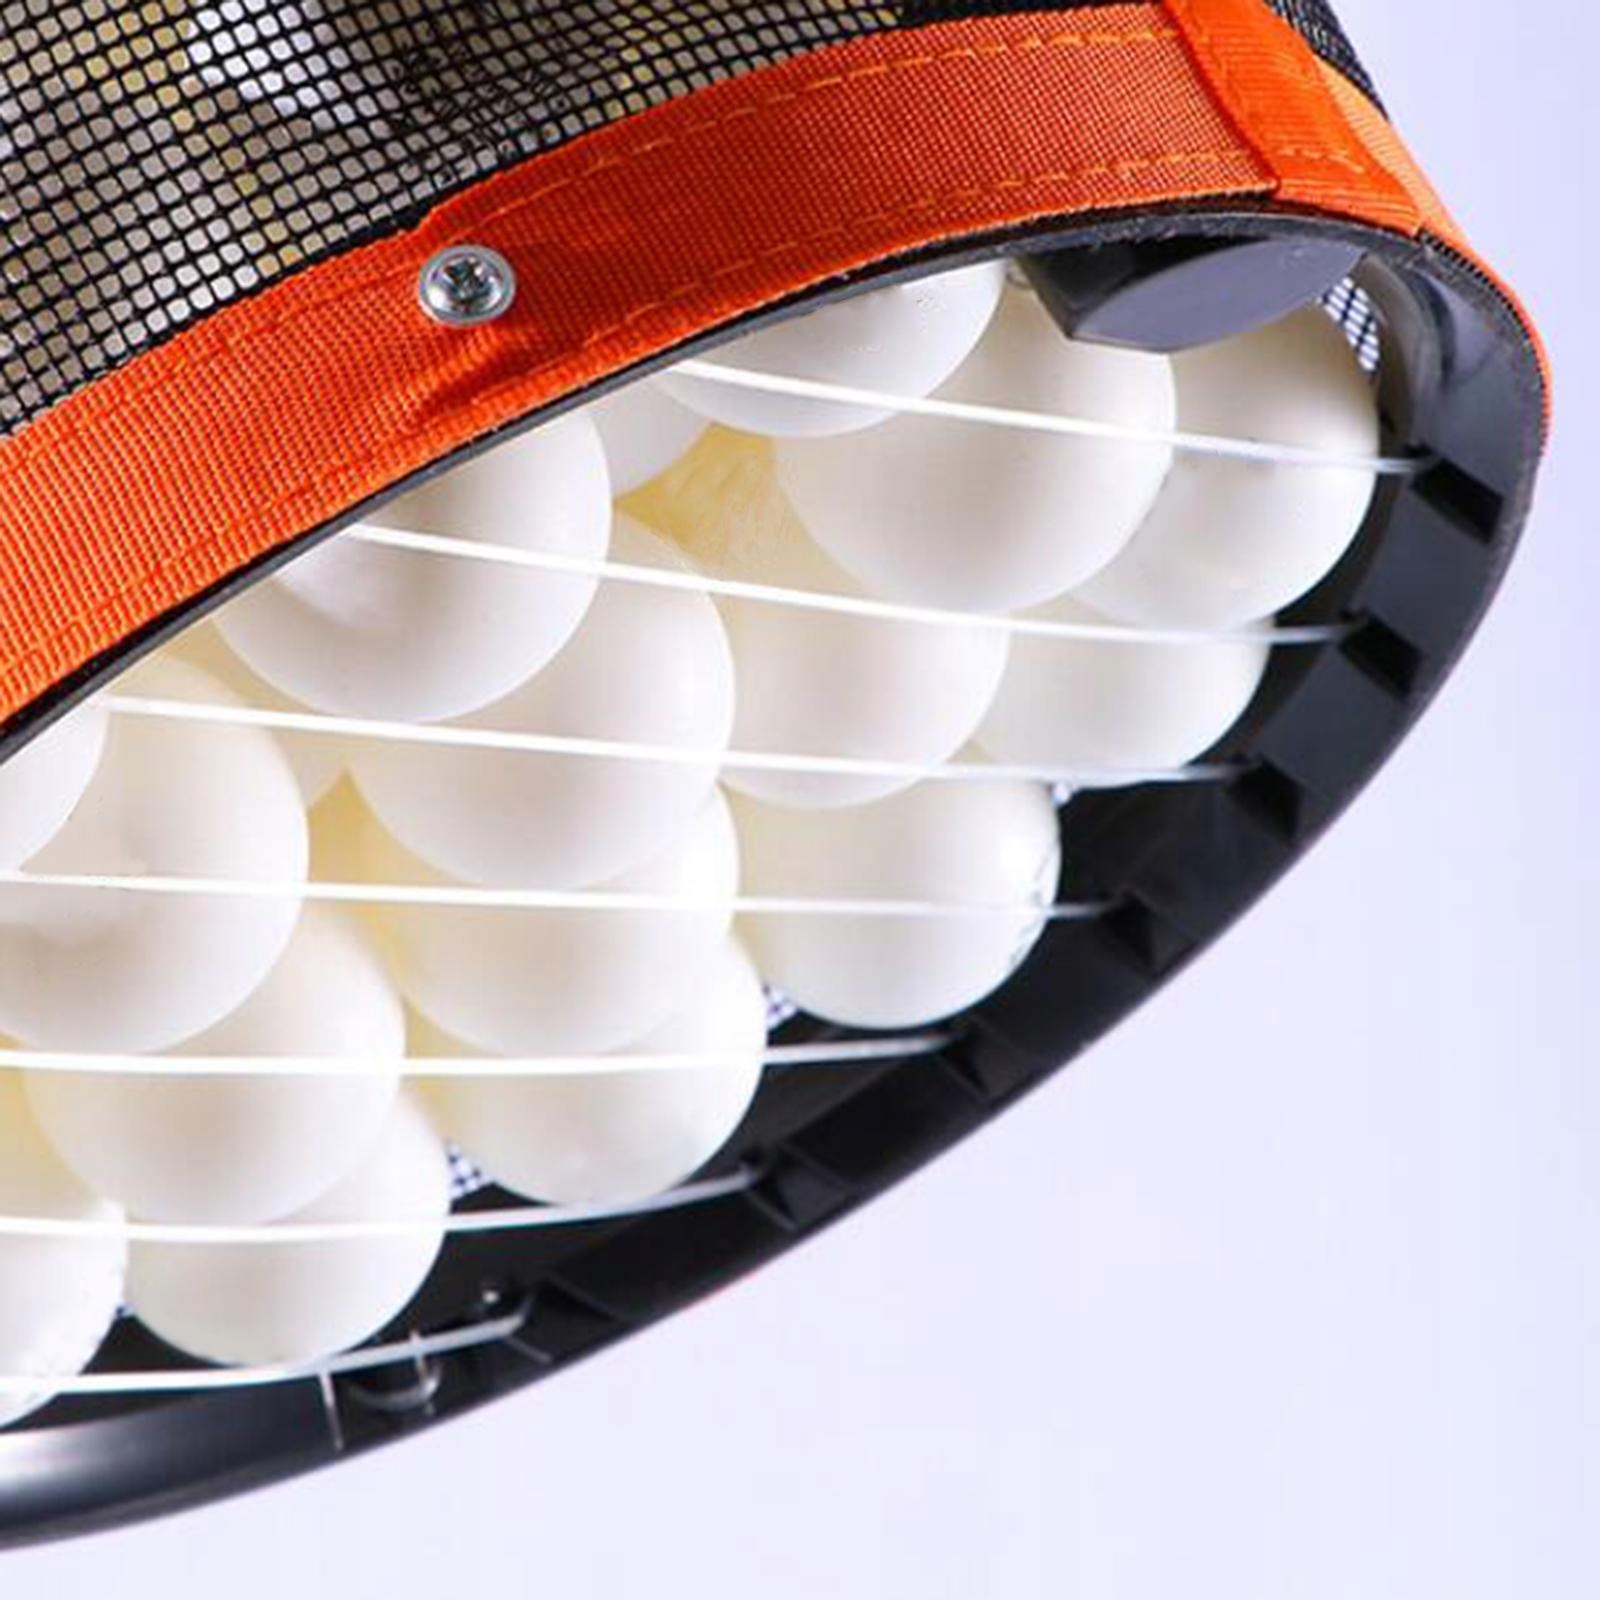 2шт портативный теннисный мяч Picker, хранения Net мяч модель сумка для хранения легко использовать